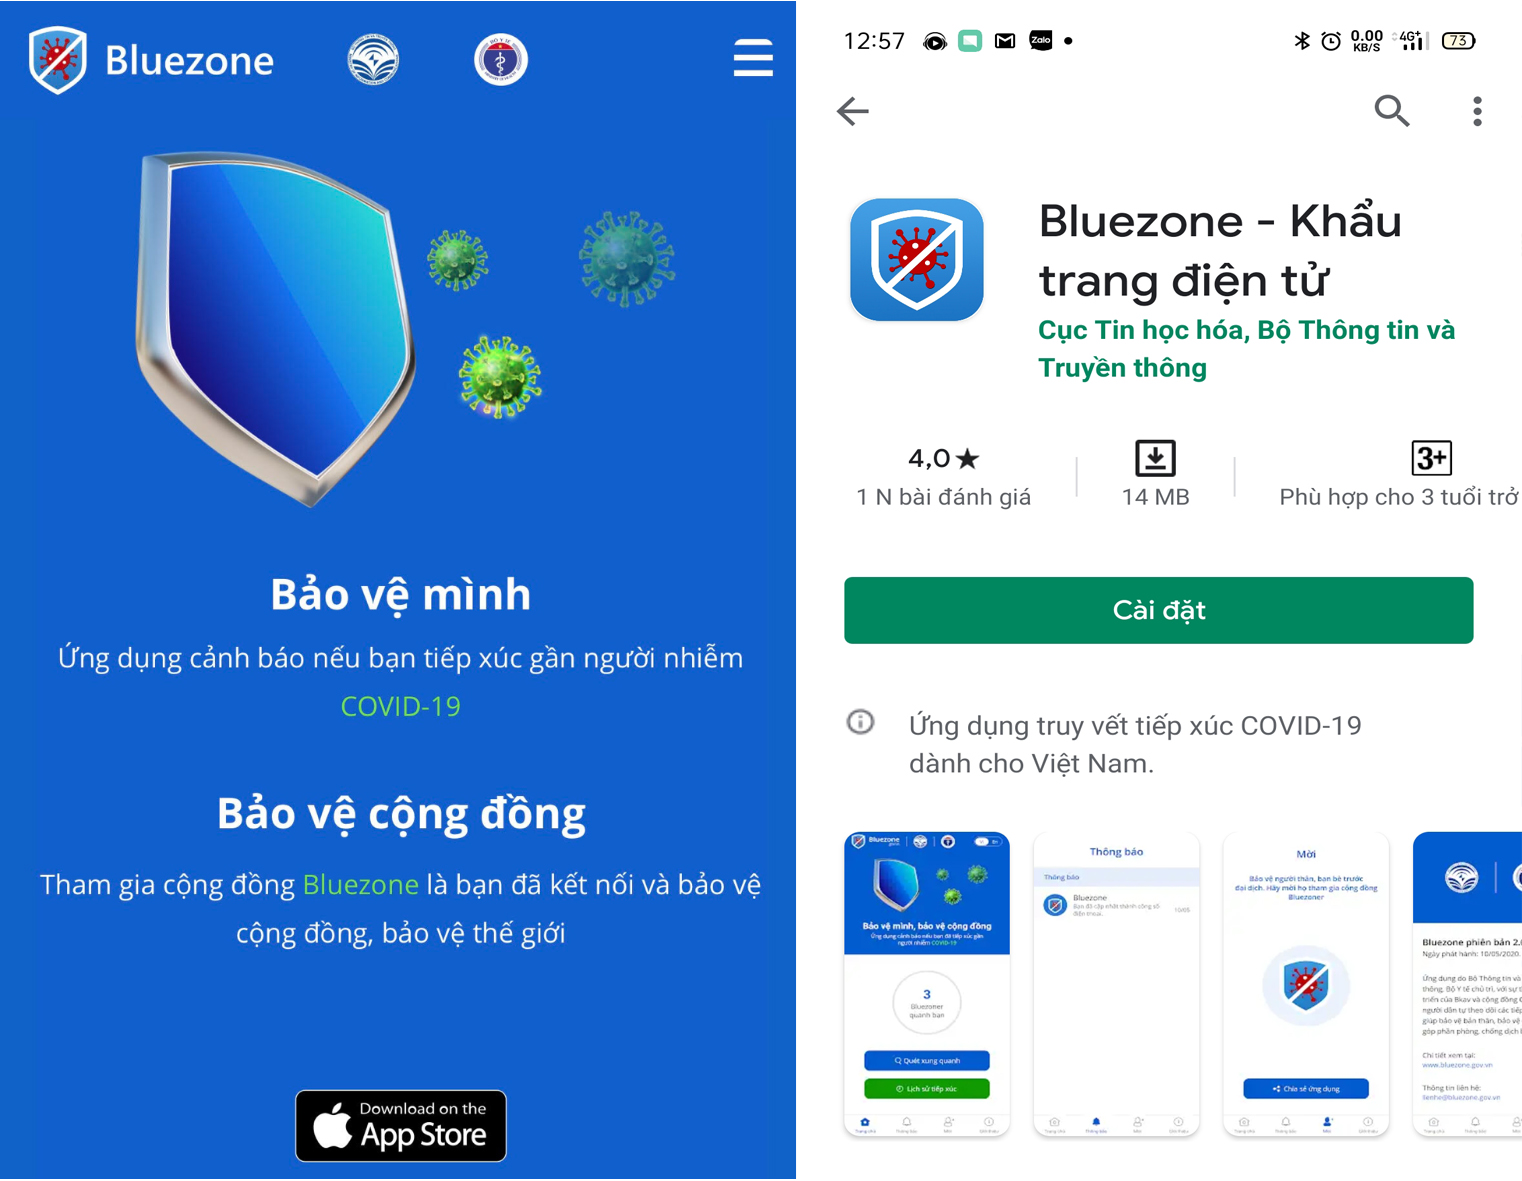 Khẩu trang điện tử Bluezone là một trong những phần mềm ứng dụng ra đời ngày 18/4/2020, để hỗ trợ phòng chống dịch Covid-19.